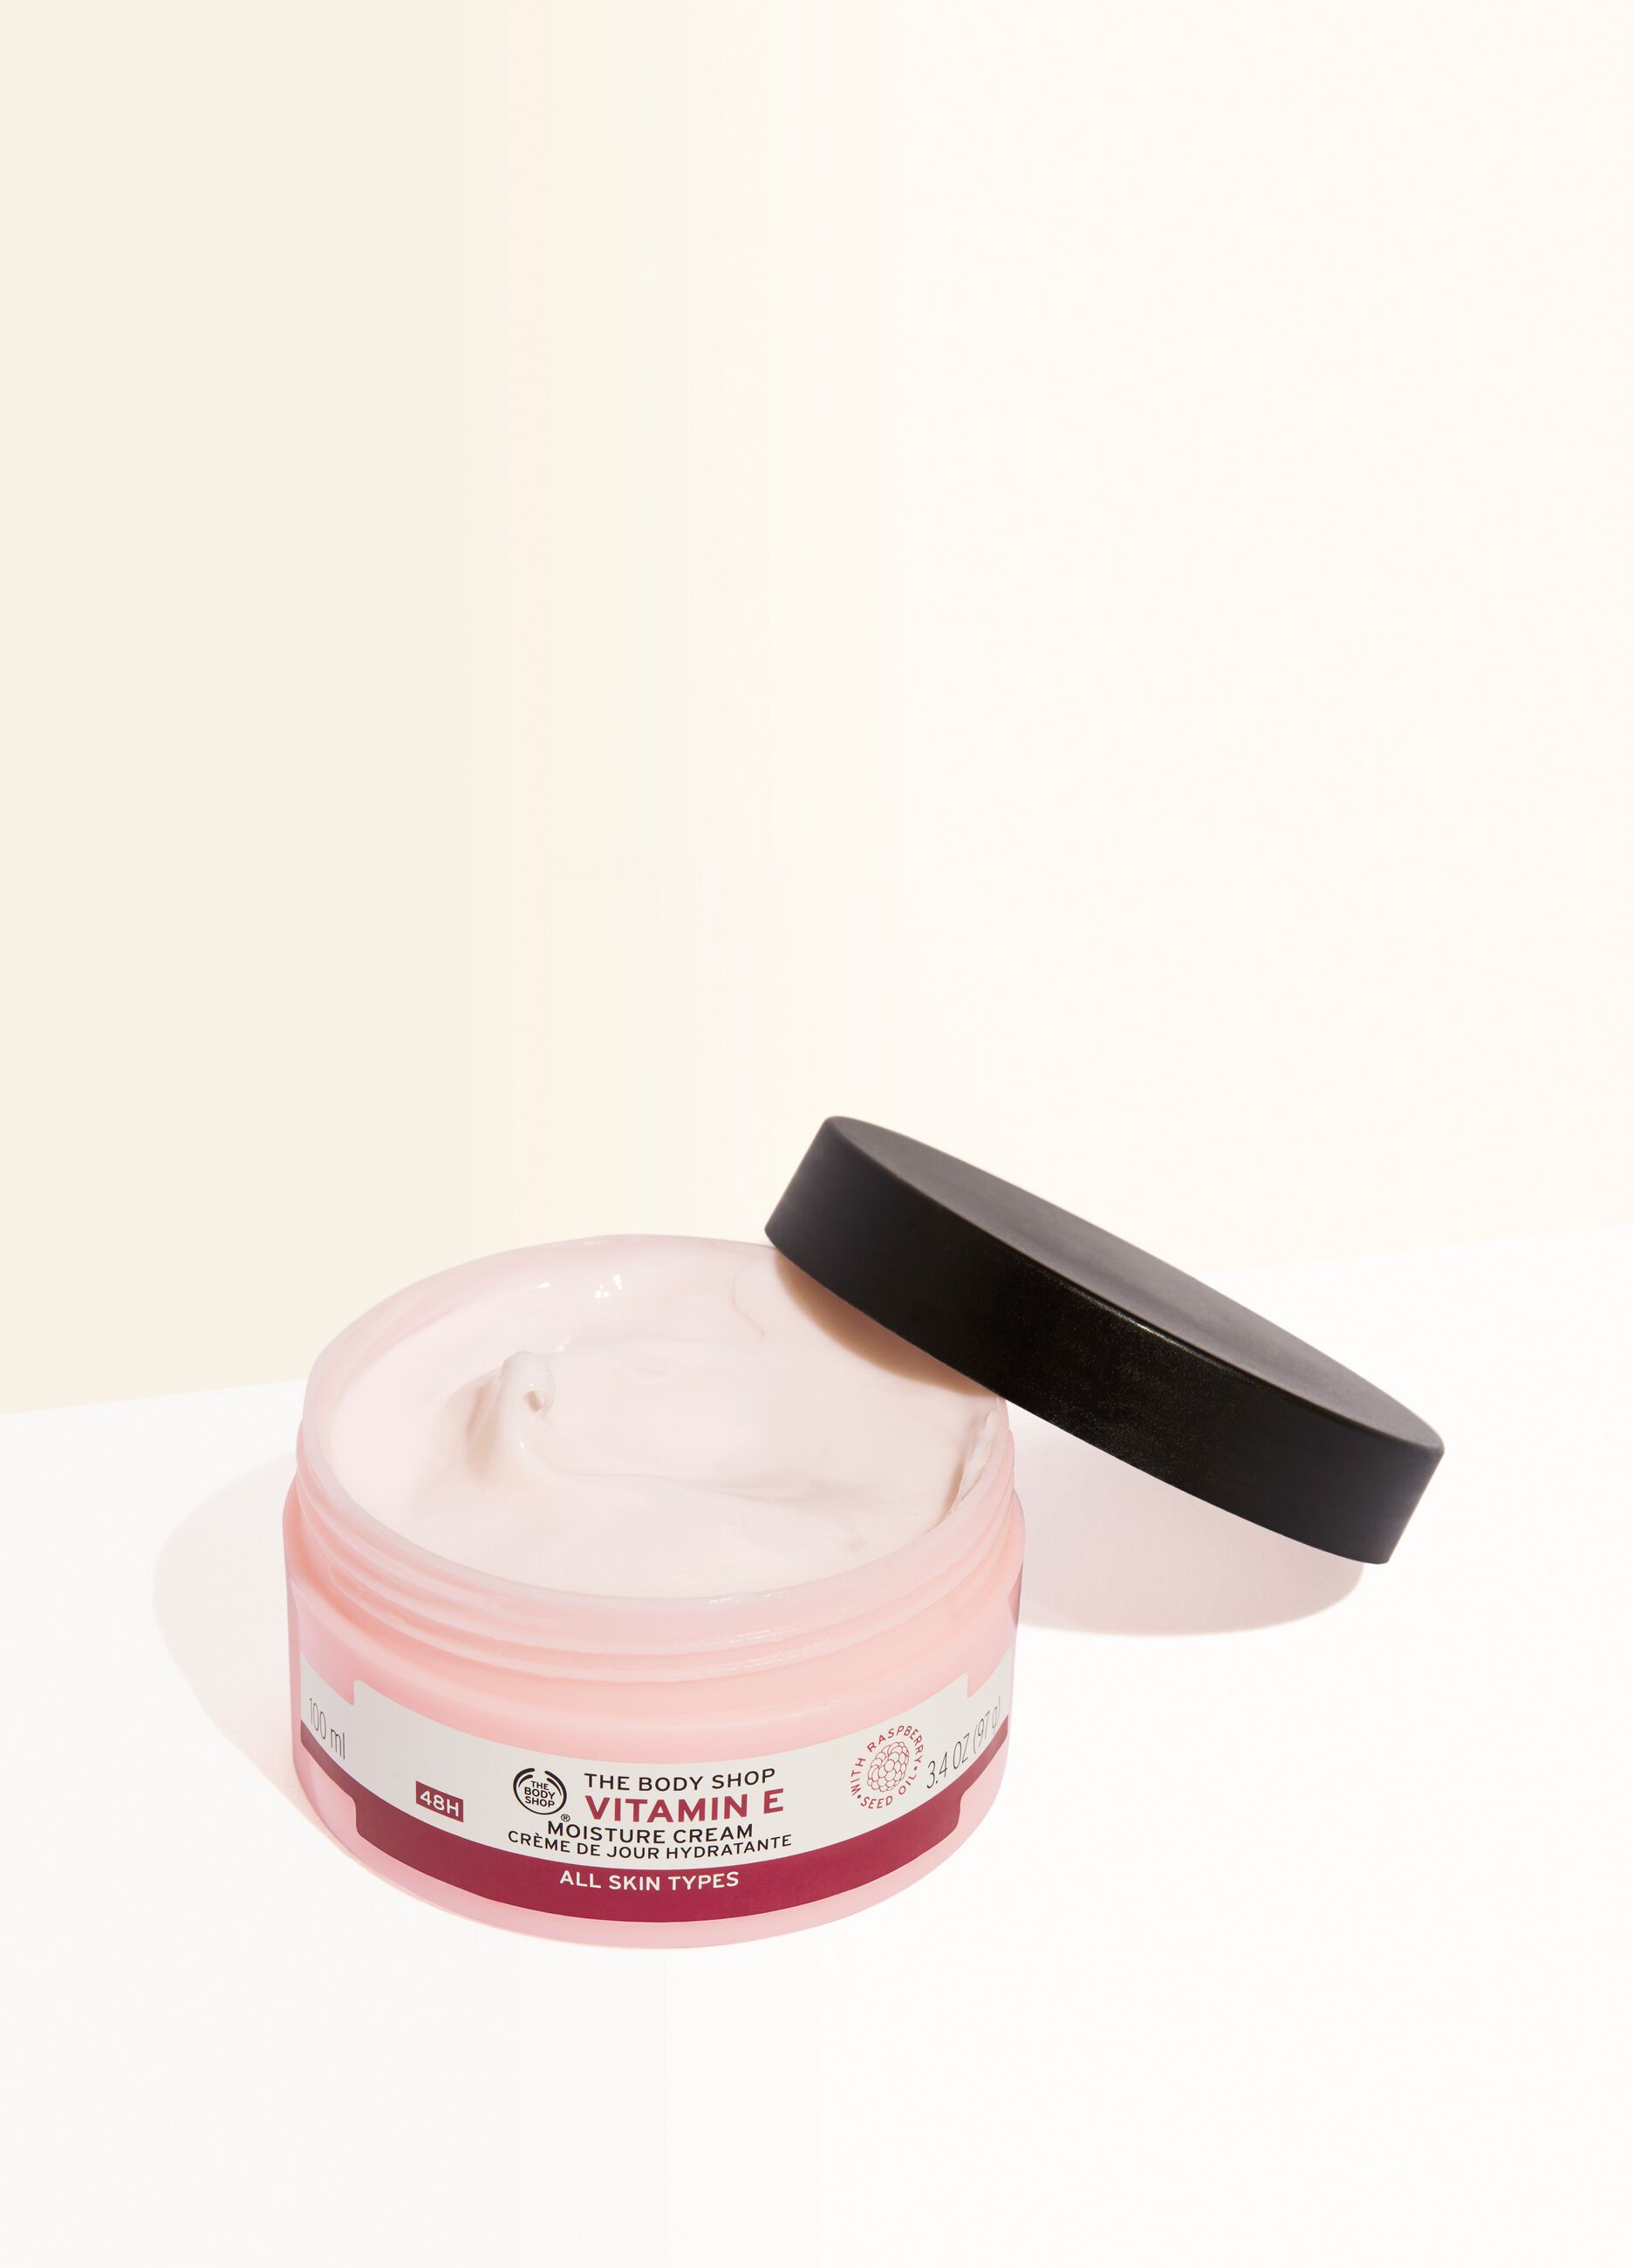 The Body Shop moisturising cream with vitamin E 100ml